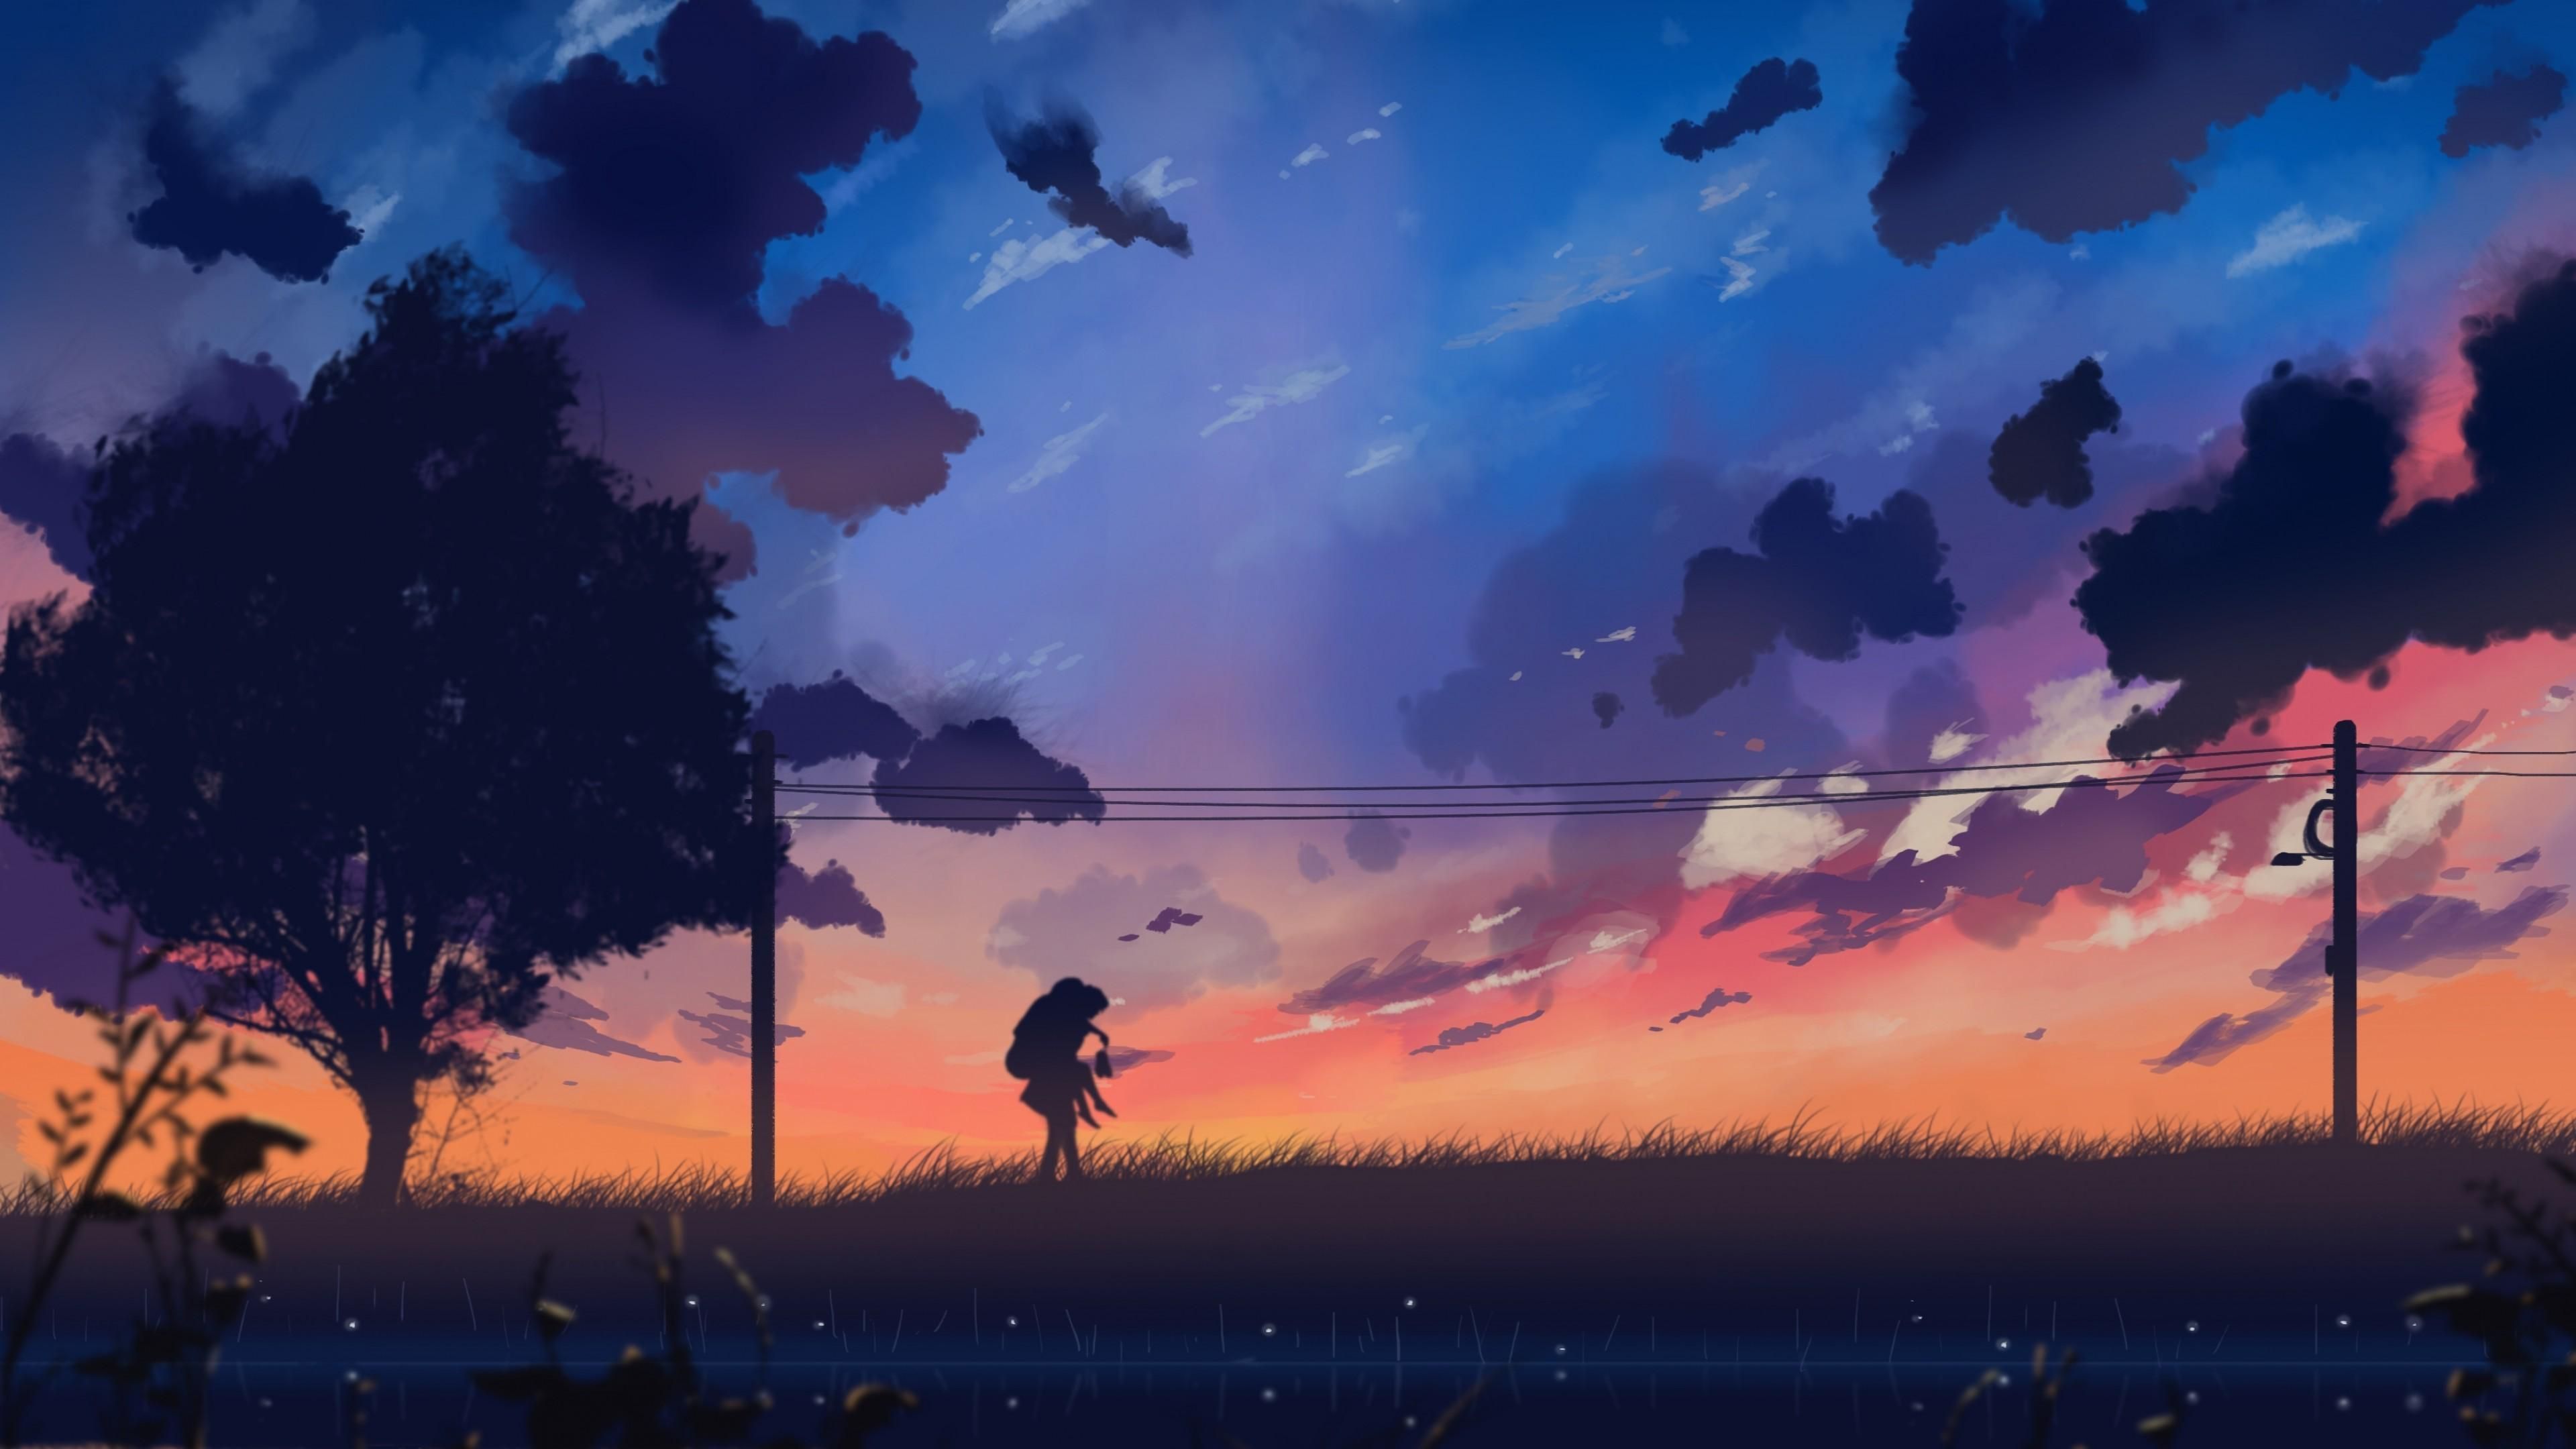 Aesthetic Anime Landscape Wallpaper C09. Anime scenery, Anime background, Landscape wallpaper